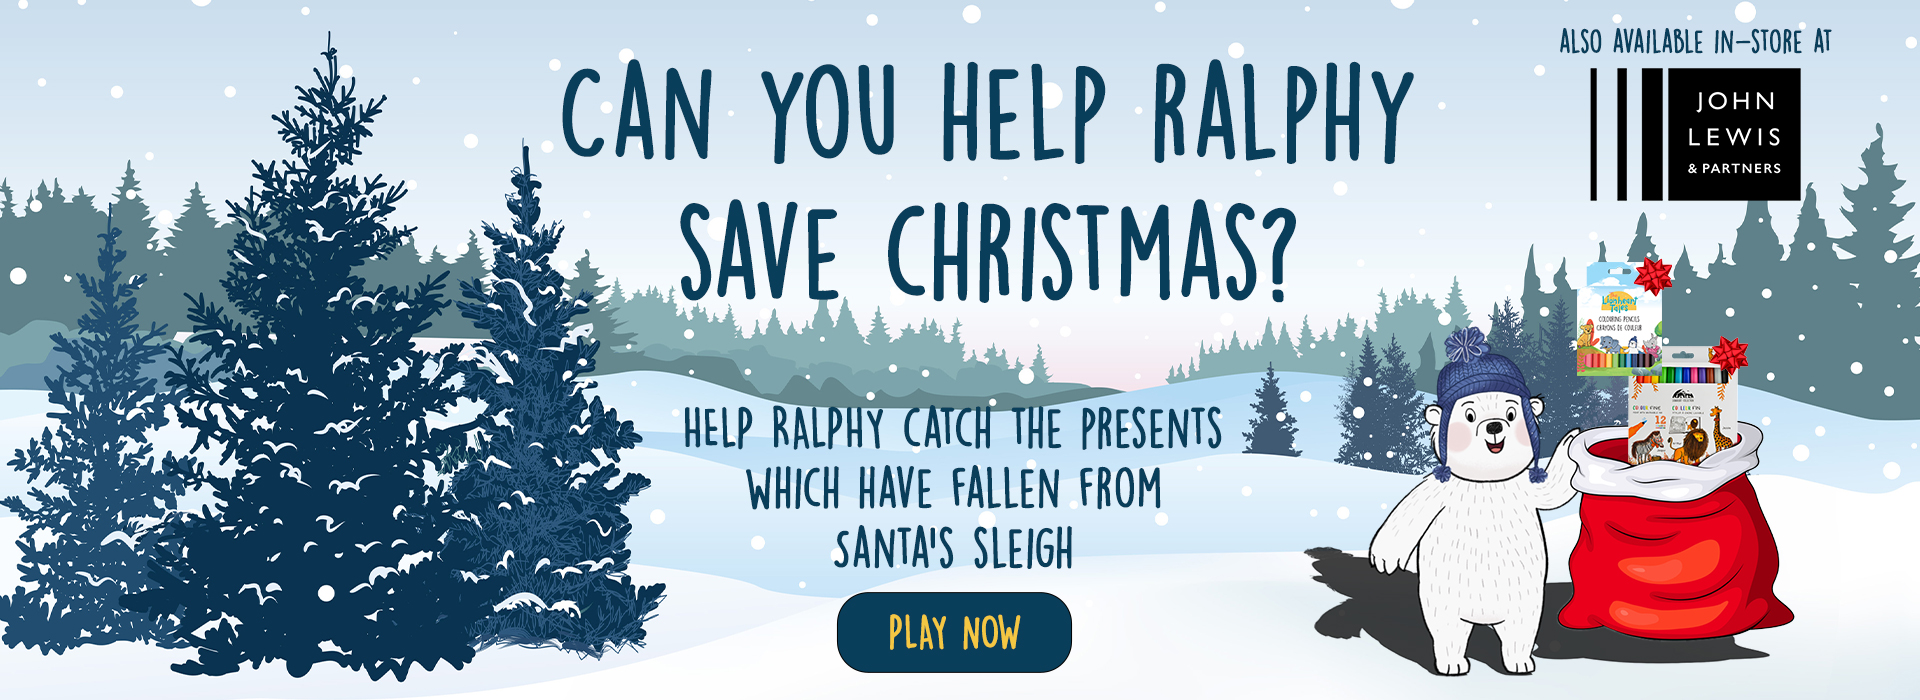 Ralphy_Saves_Christmas_Web_Banner_1